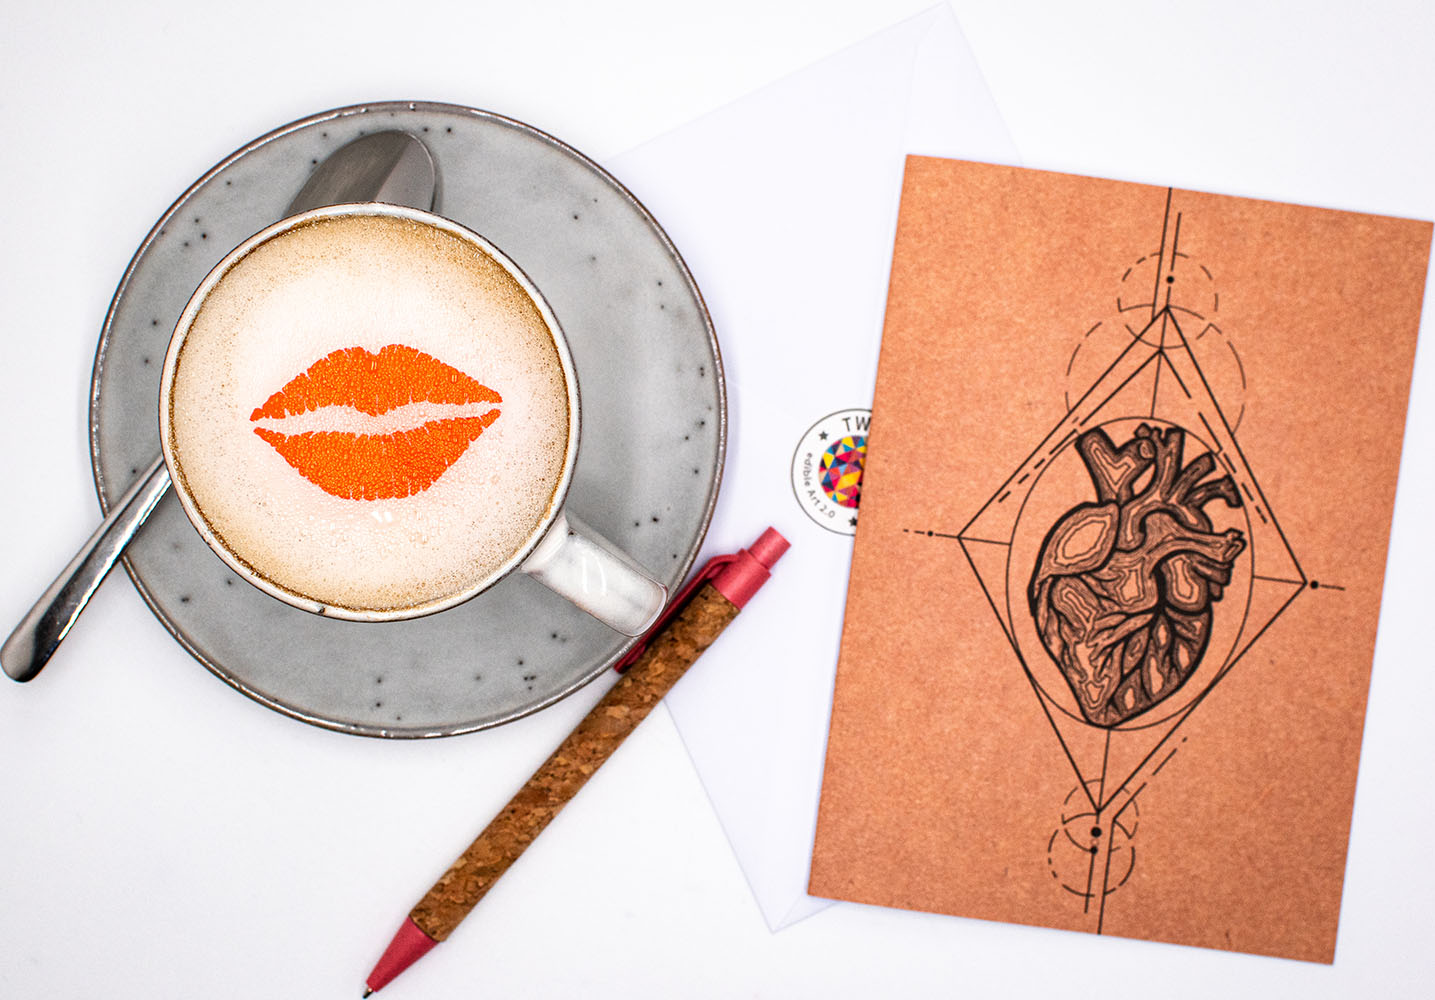 Twicky Sticky Kussmund auf Cappuccino in grauer Tasse. Rechts neben der Tasse Grußkarte anatomisches Herz mit Umschlag und Kugelschreiber